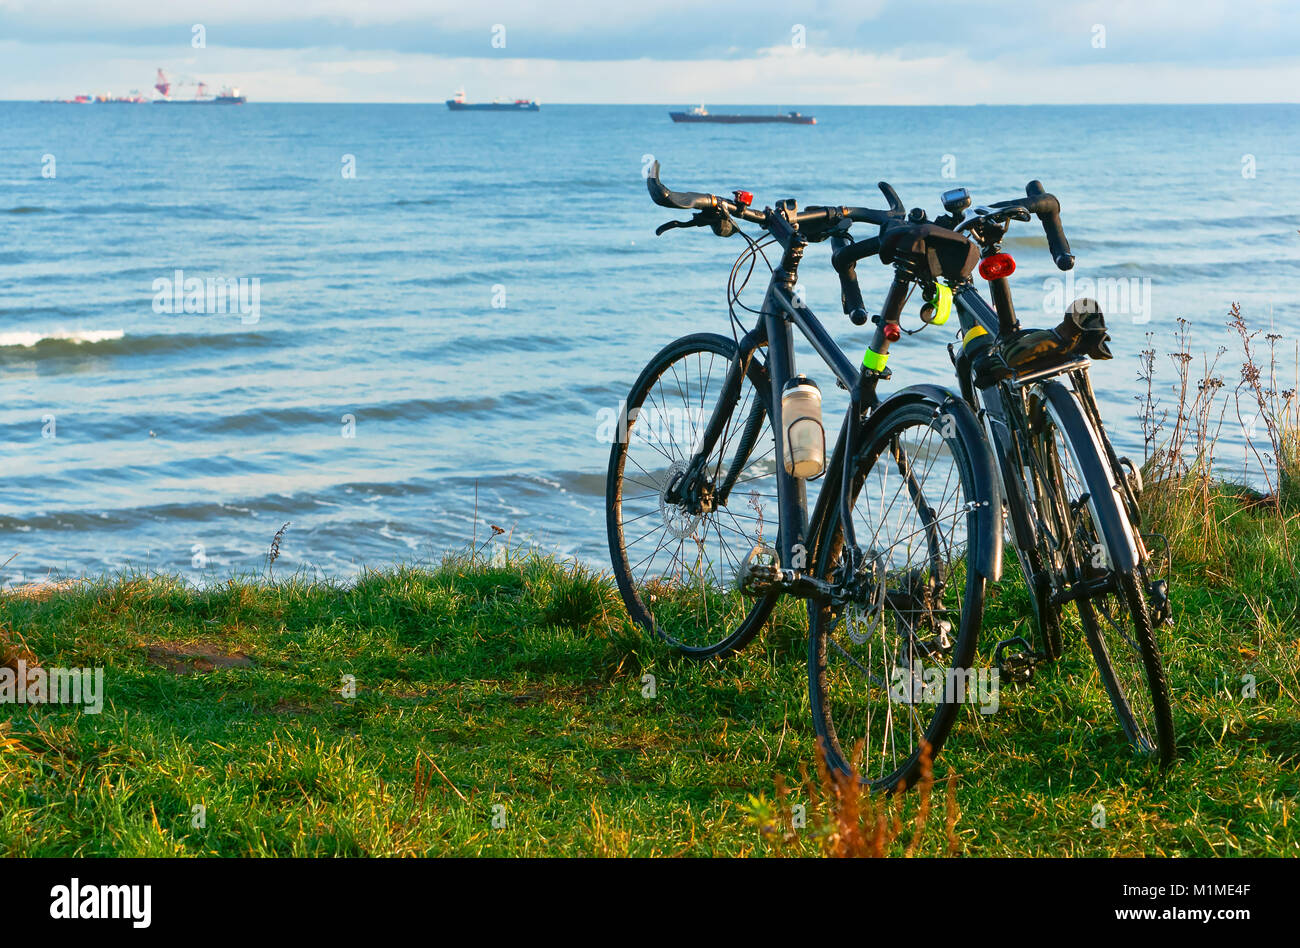 Dos bicicletas en la playa, dos motos en la costa Fotografía de stock -  Alamy